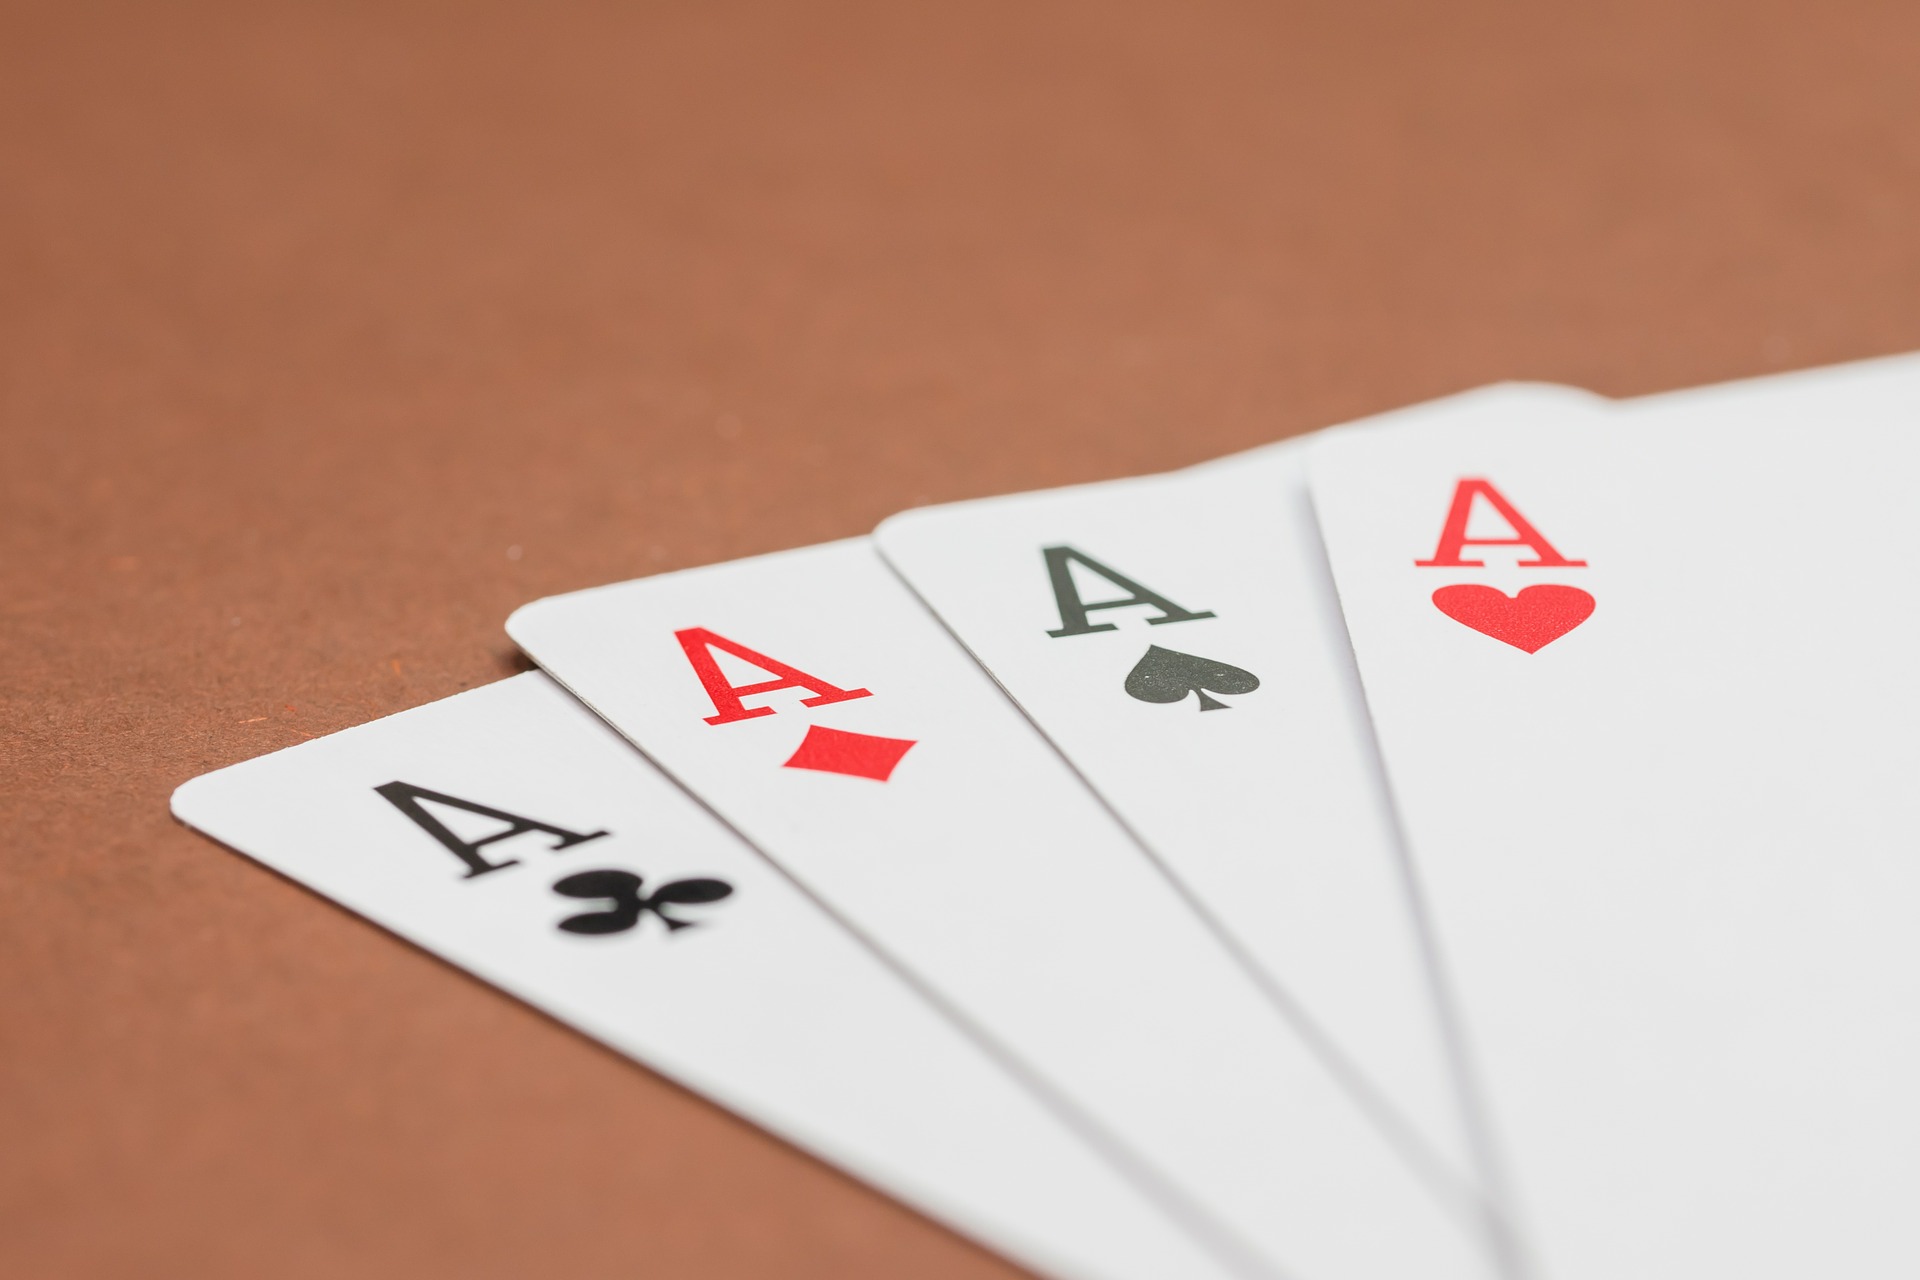 Ein Bild von vier ASS Spielkarten